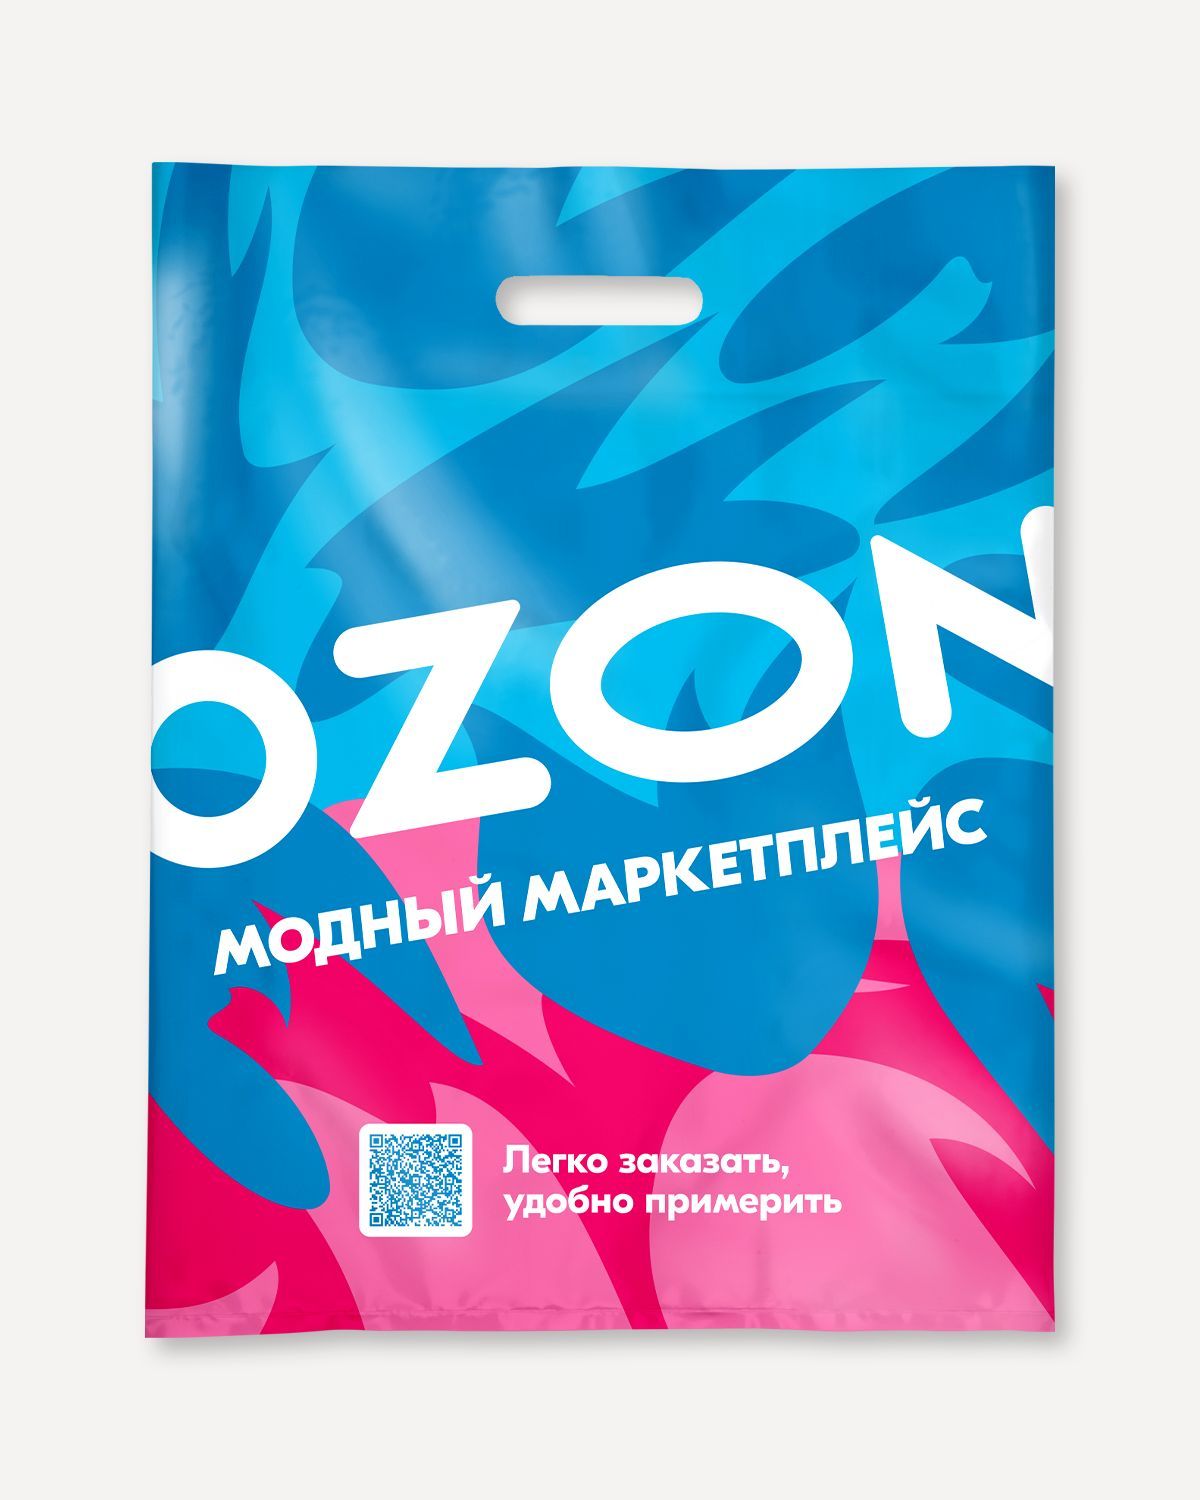 Пакет озон пвз. Пакет Озон. Пакет Озон фирменный. Пакет Озон фото. Пакет с логотипом Озон.